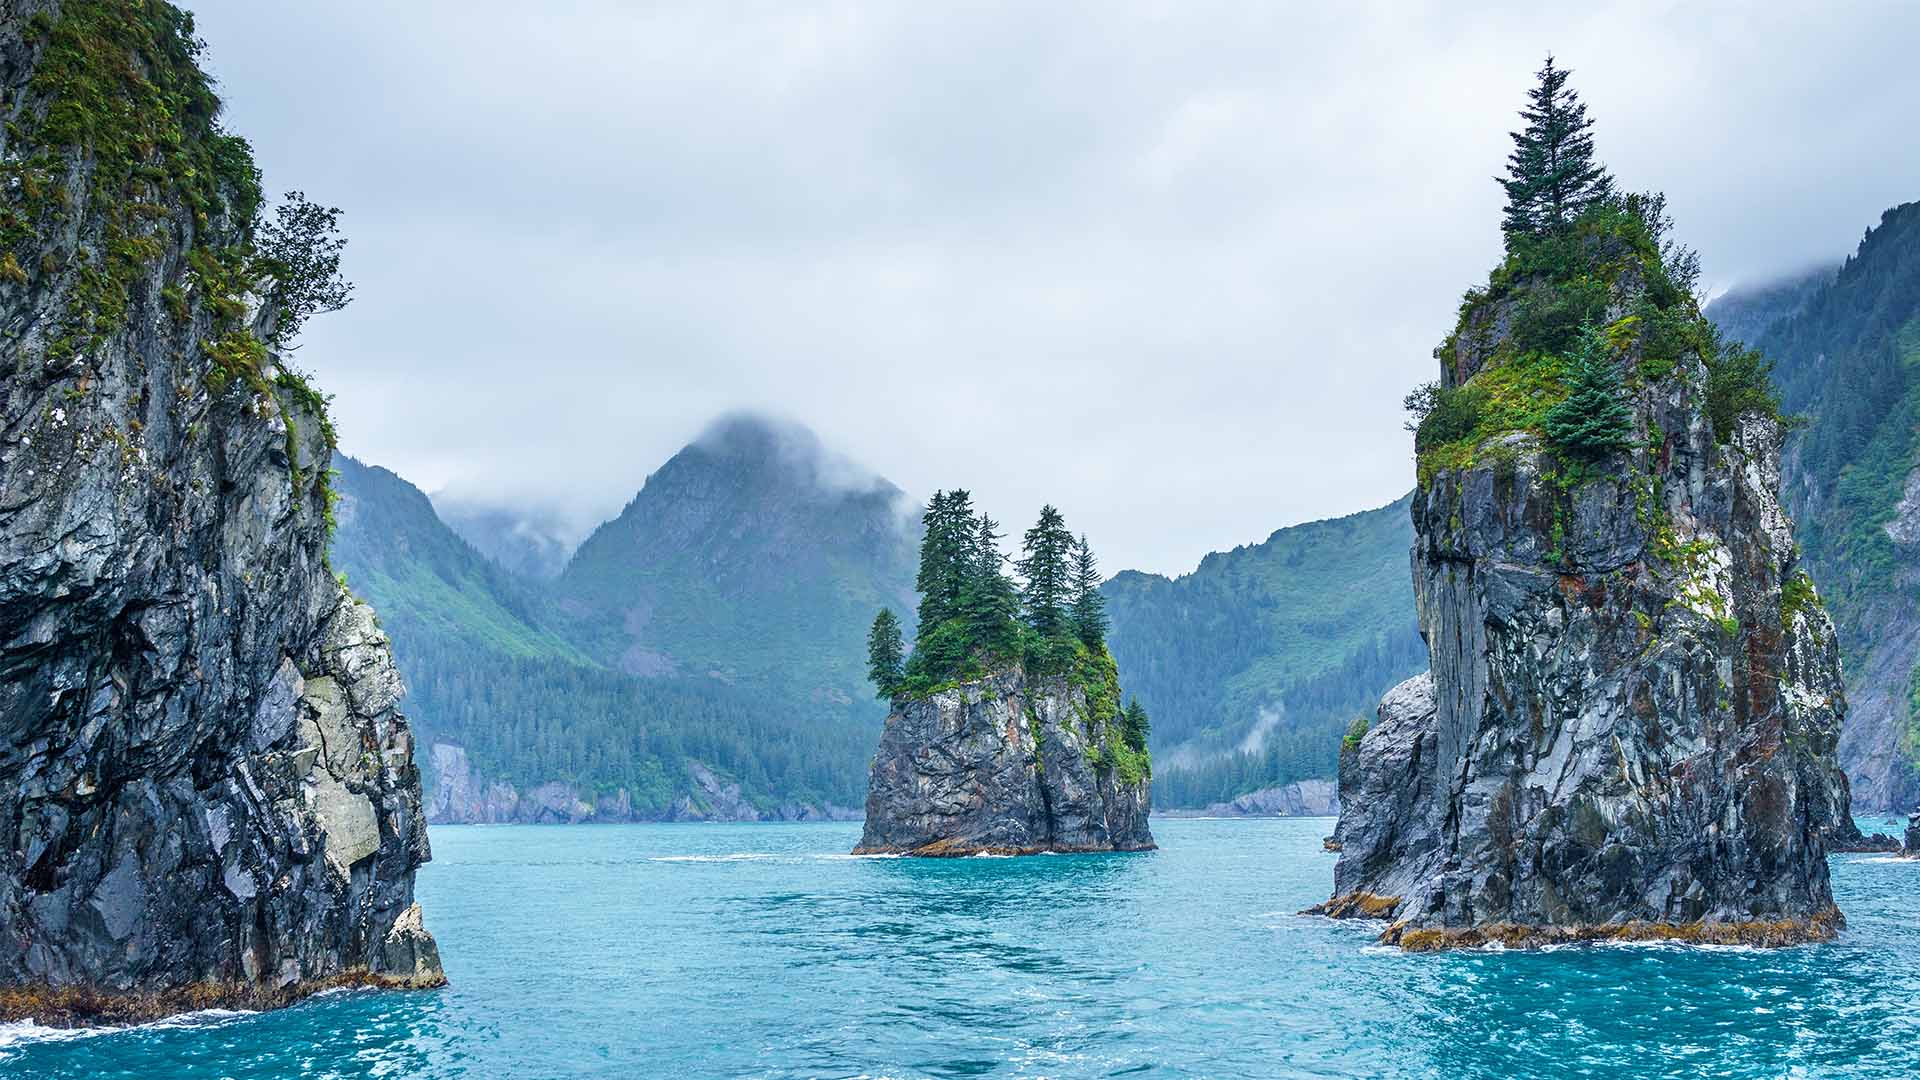 Kenai Fjords, Alaska US National Parks Summer 2022